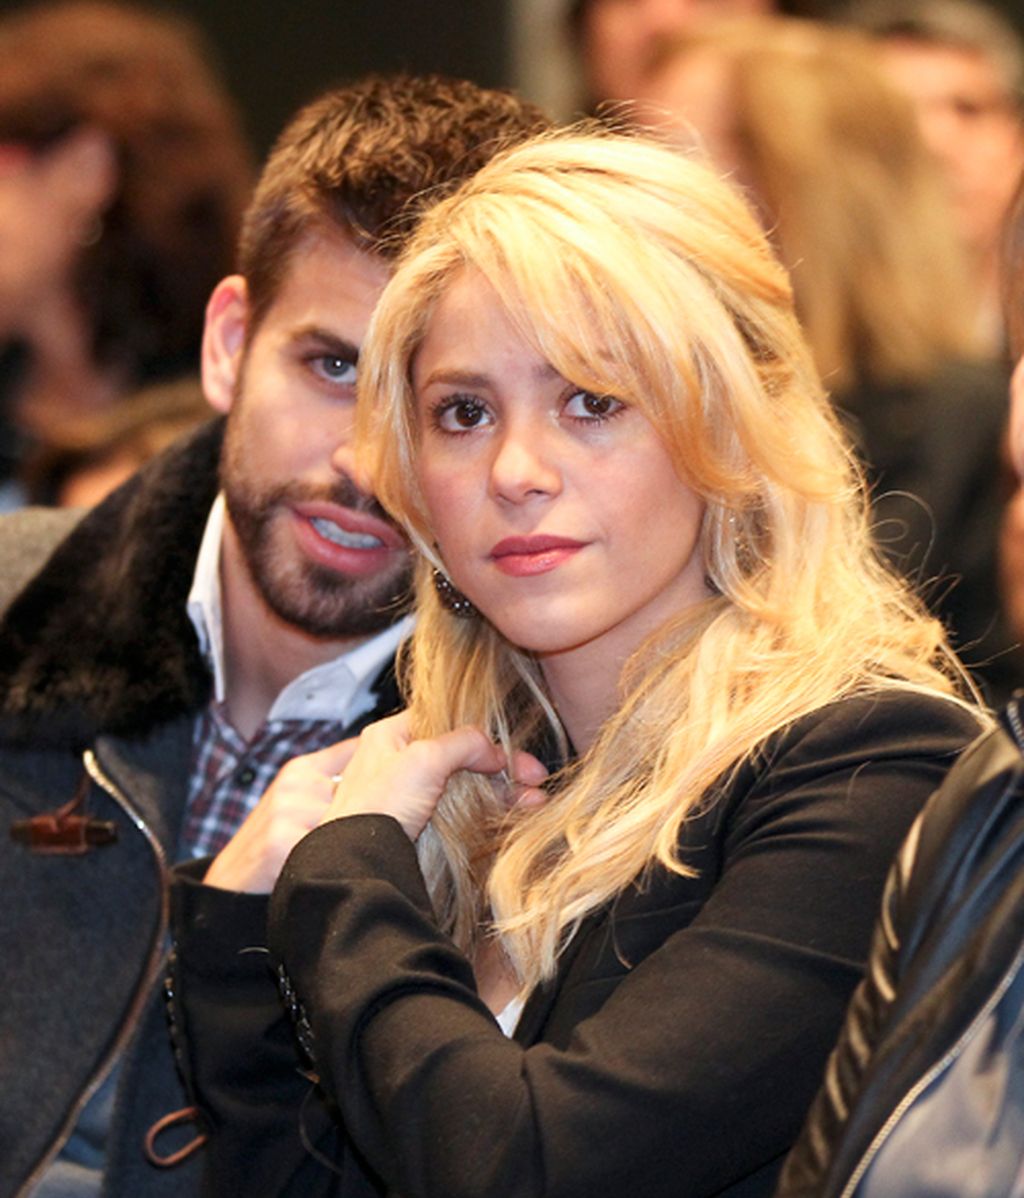 Gerard Piqué se lleva a Shakira a la presentación del libro de su padre